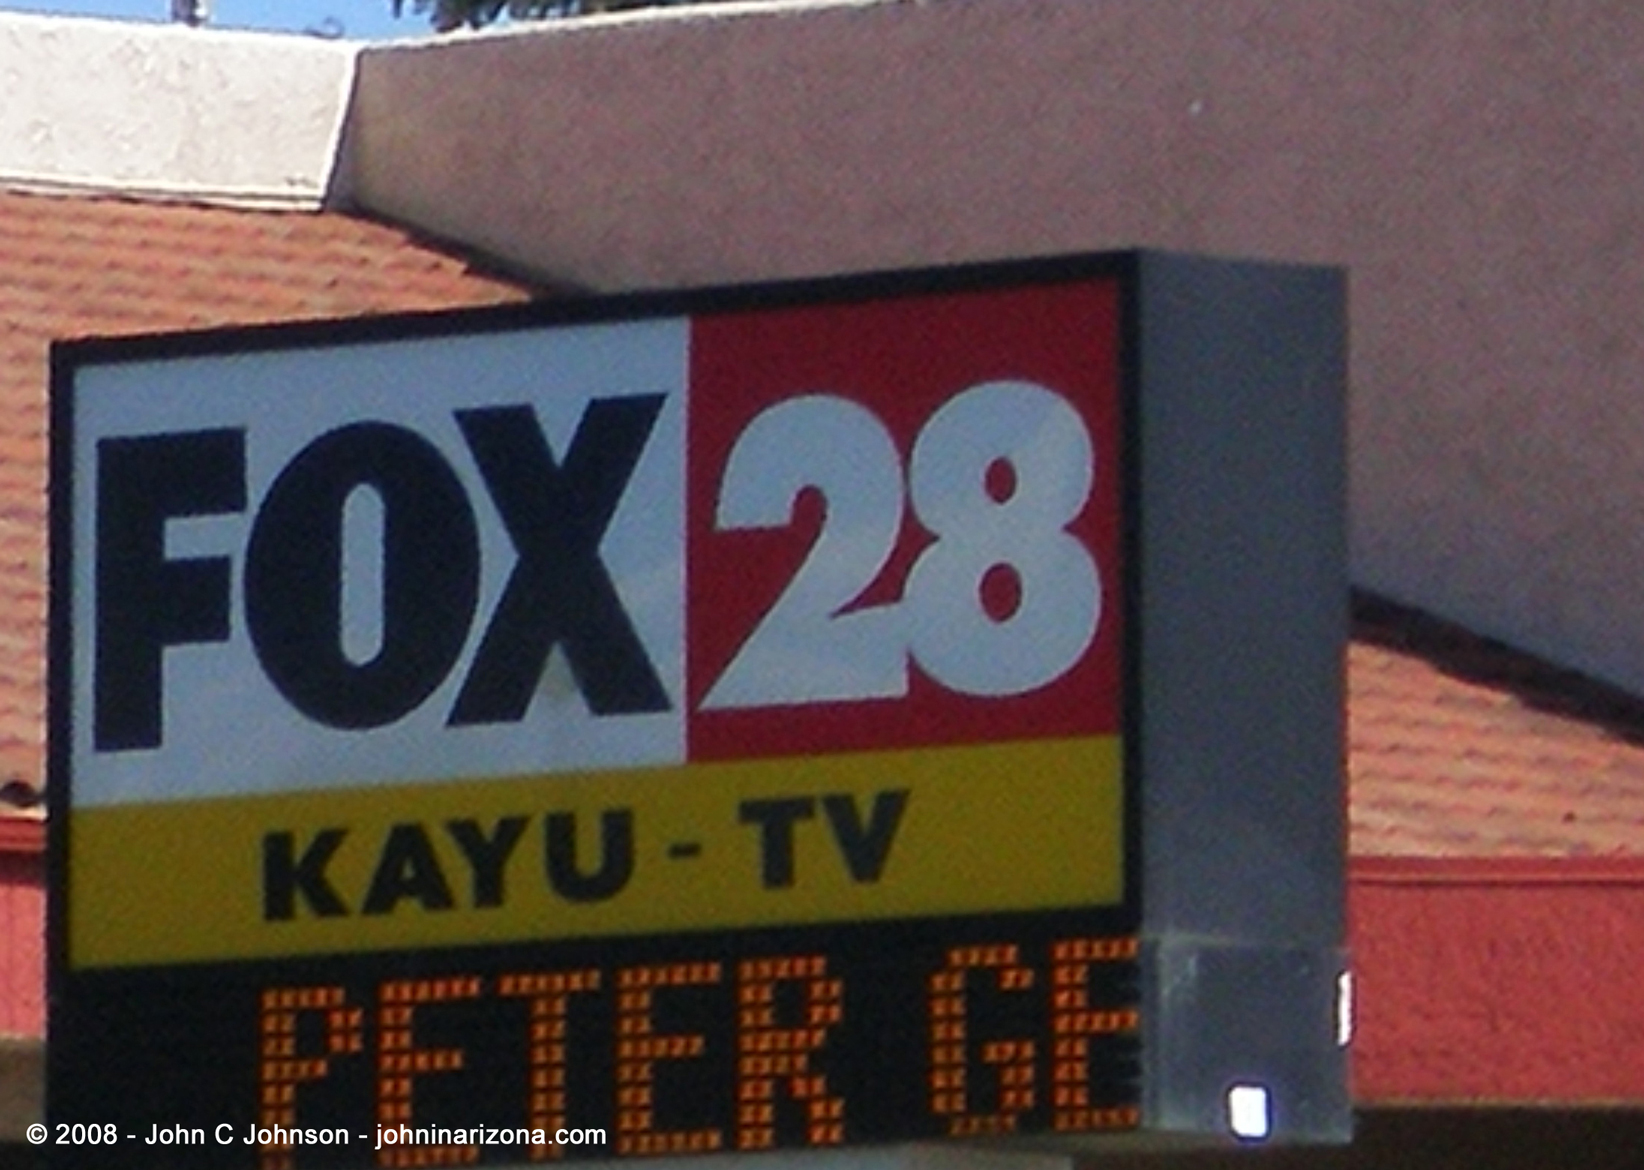 KAYU TV Channel 28 Spokane, Washington